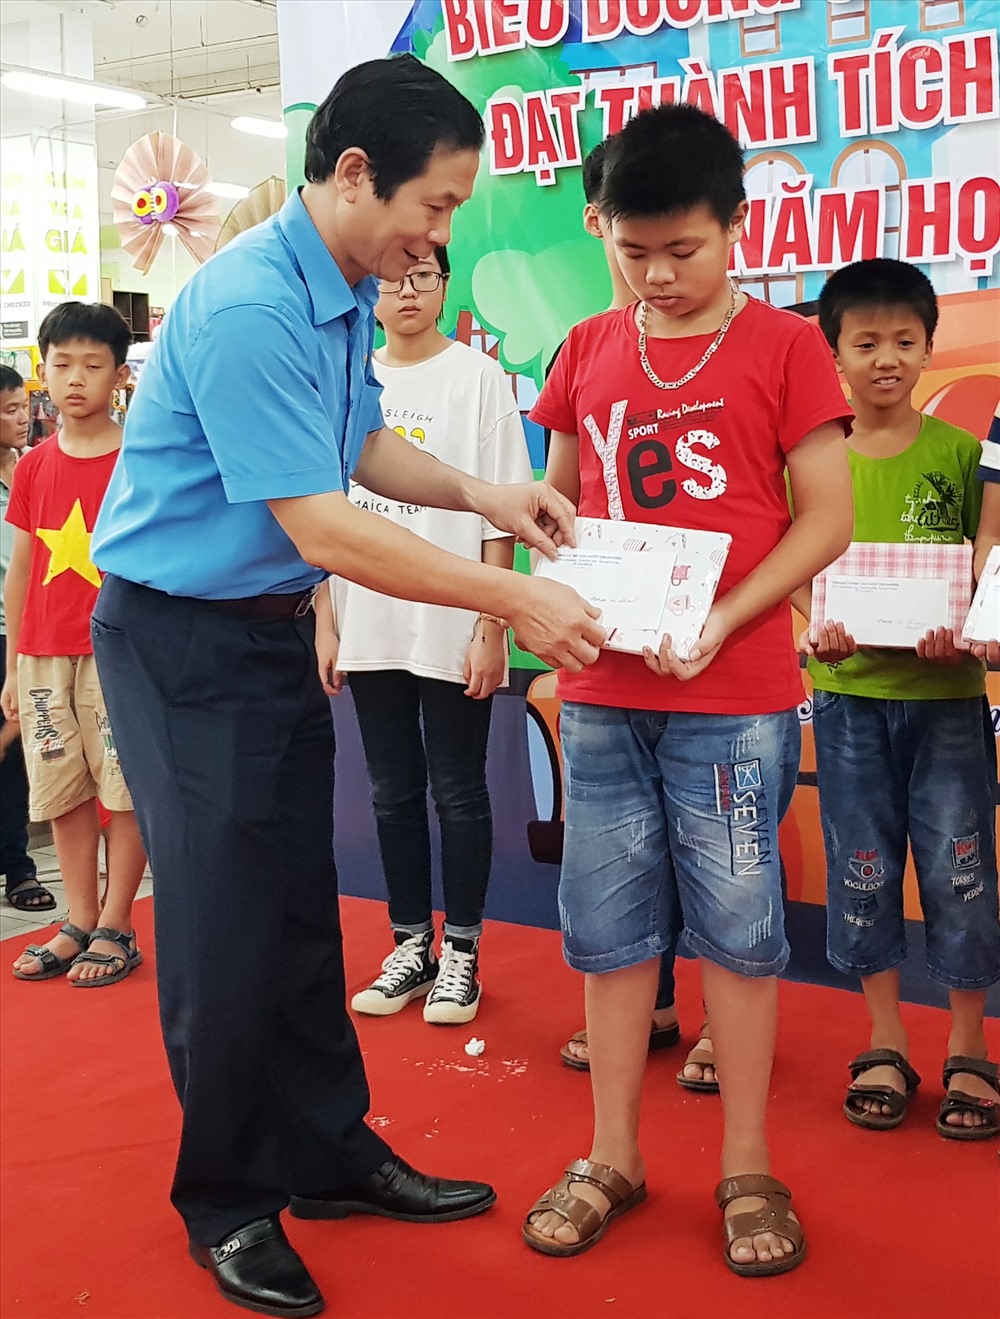 Đồng chí Trần Kim Long, Phó chủ tịch LĐLĐ tỉnh Ninh Bình tặng quà cho các em học sinh. Ảnh: NT